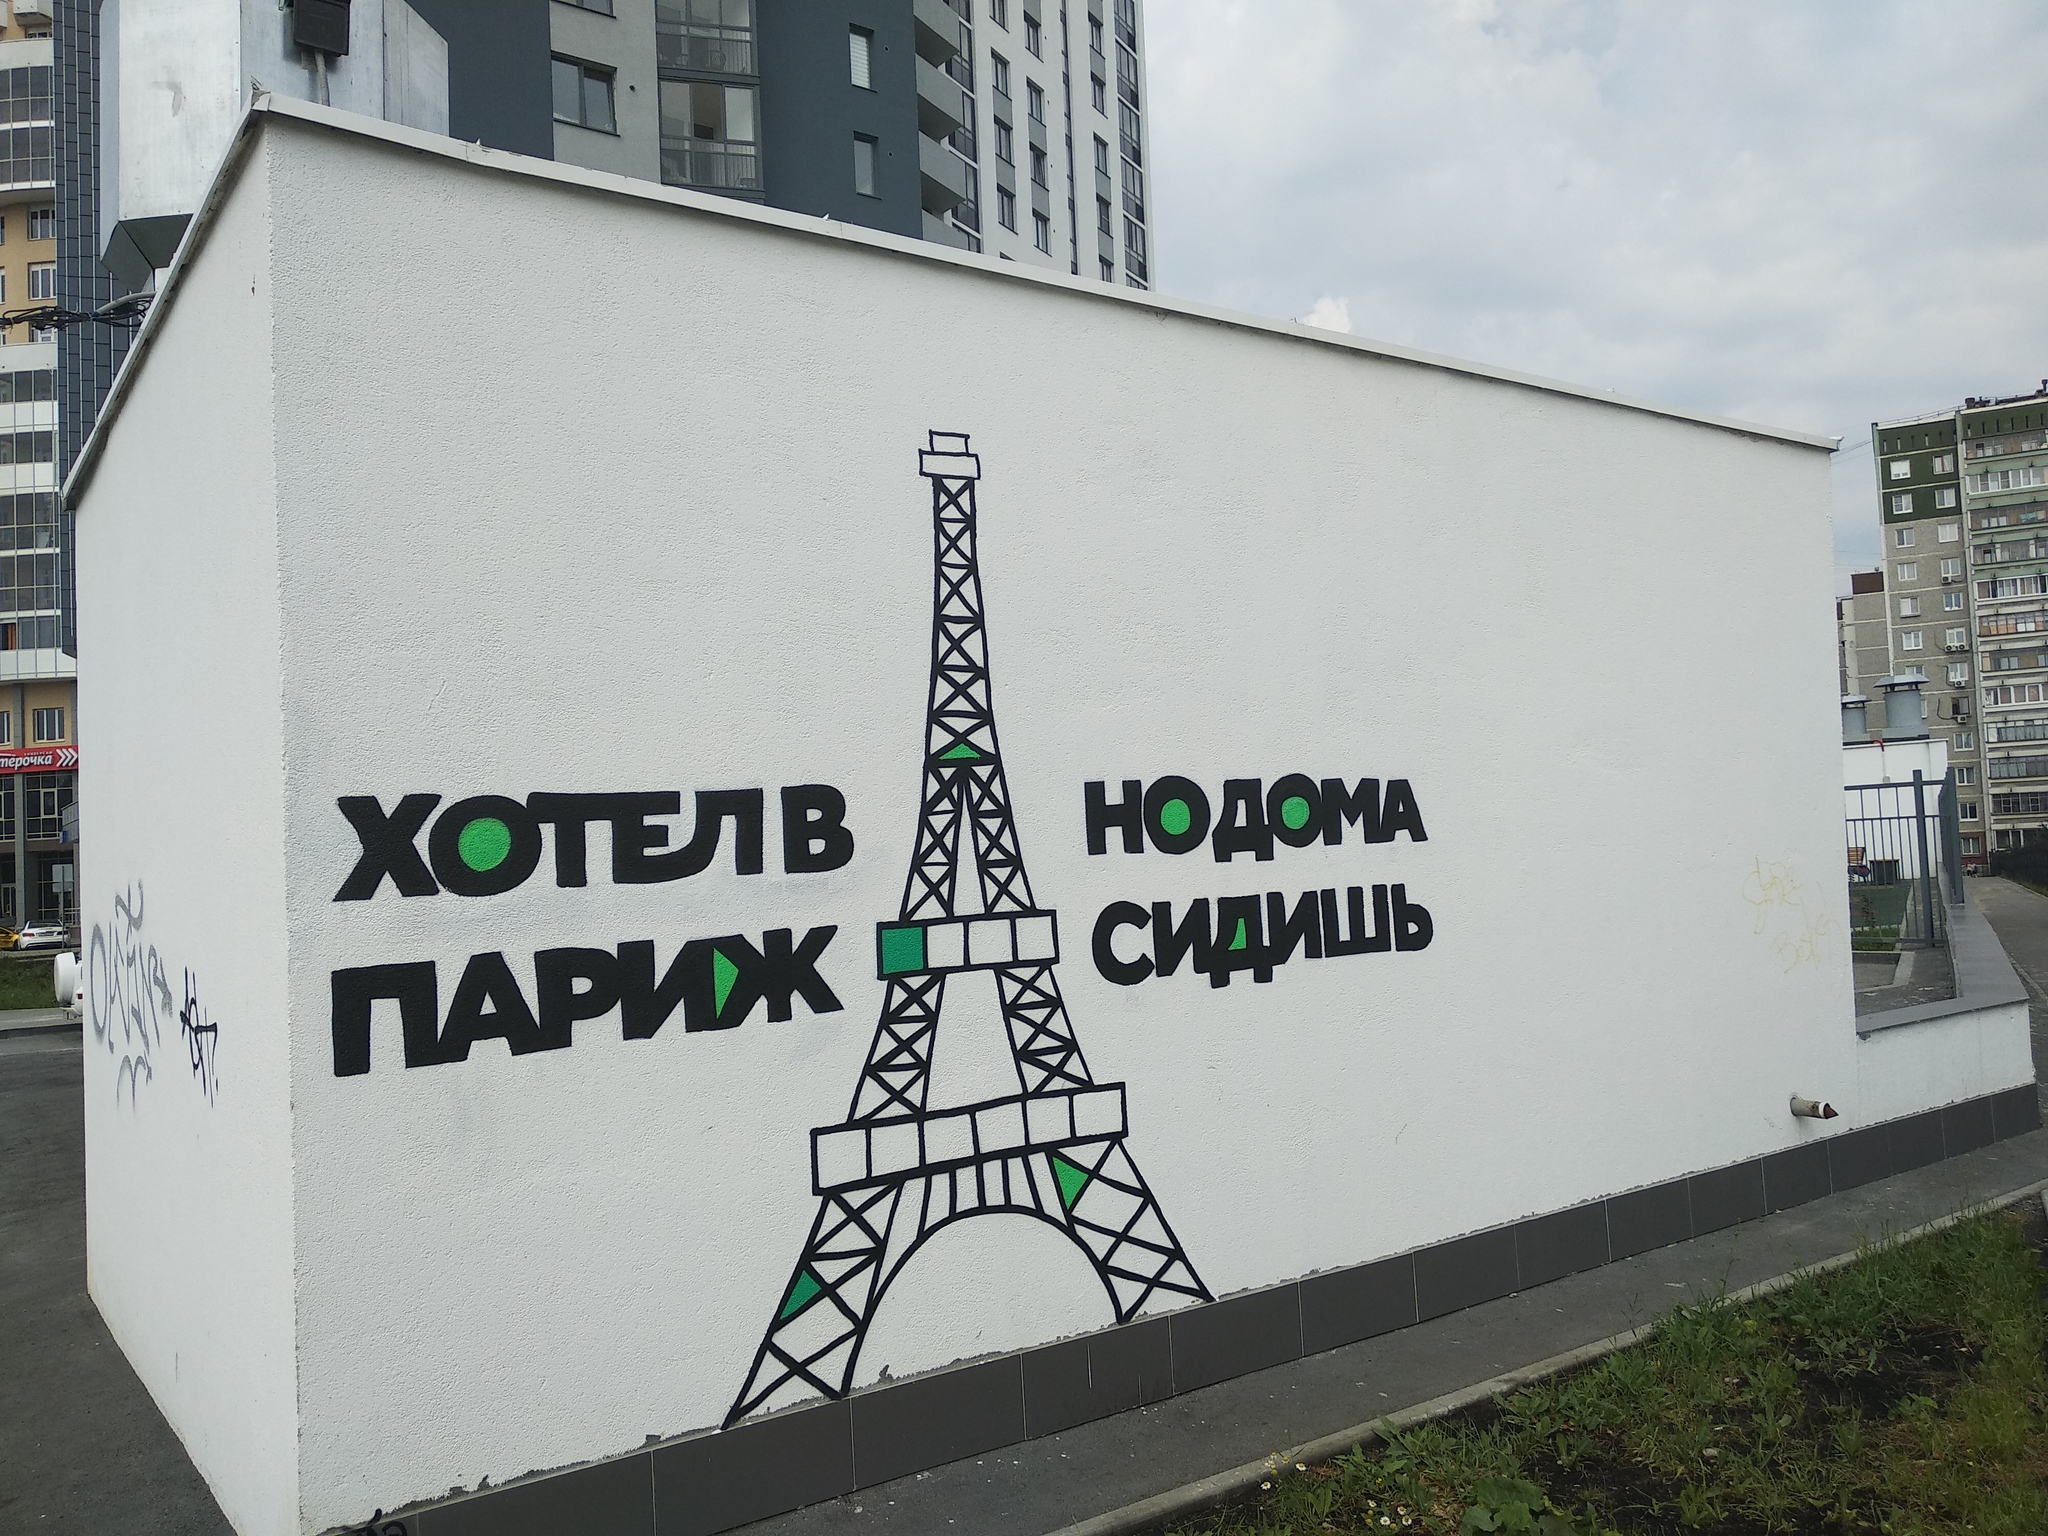 Paris-sitting - Yekaterinburg, Street art